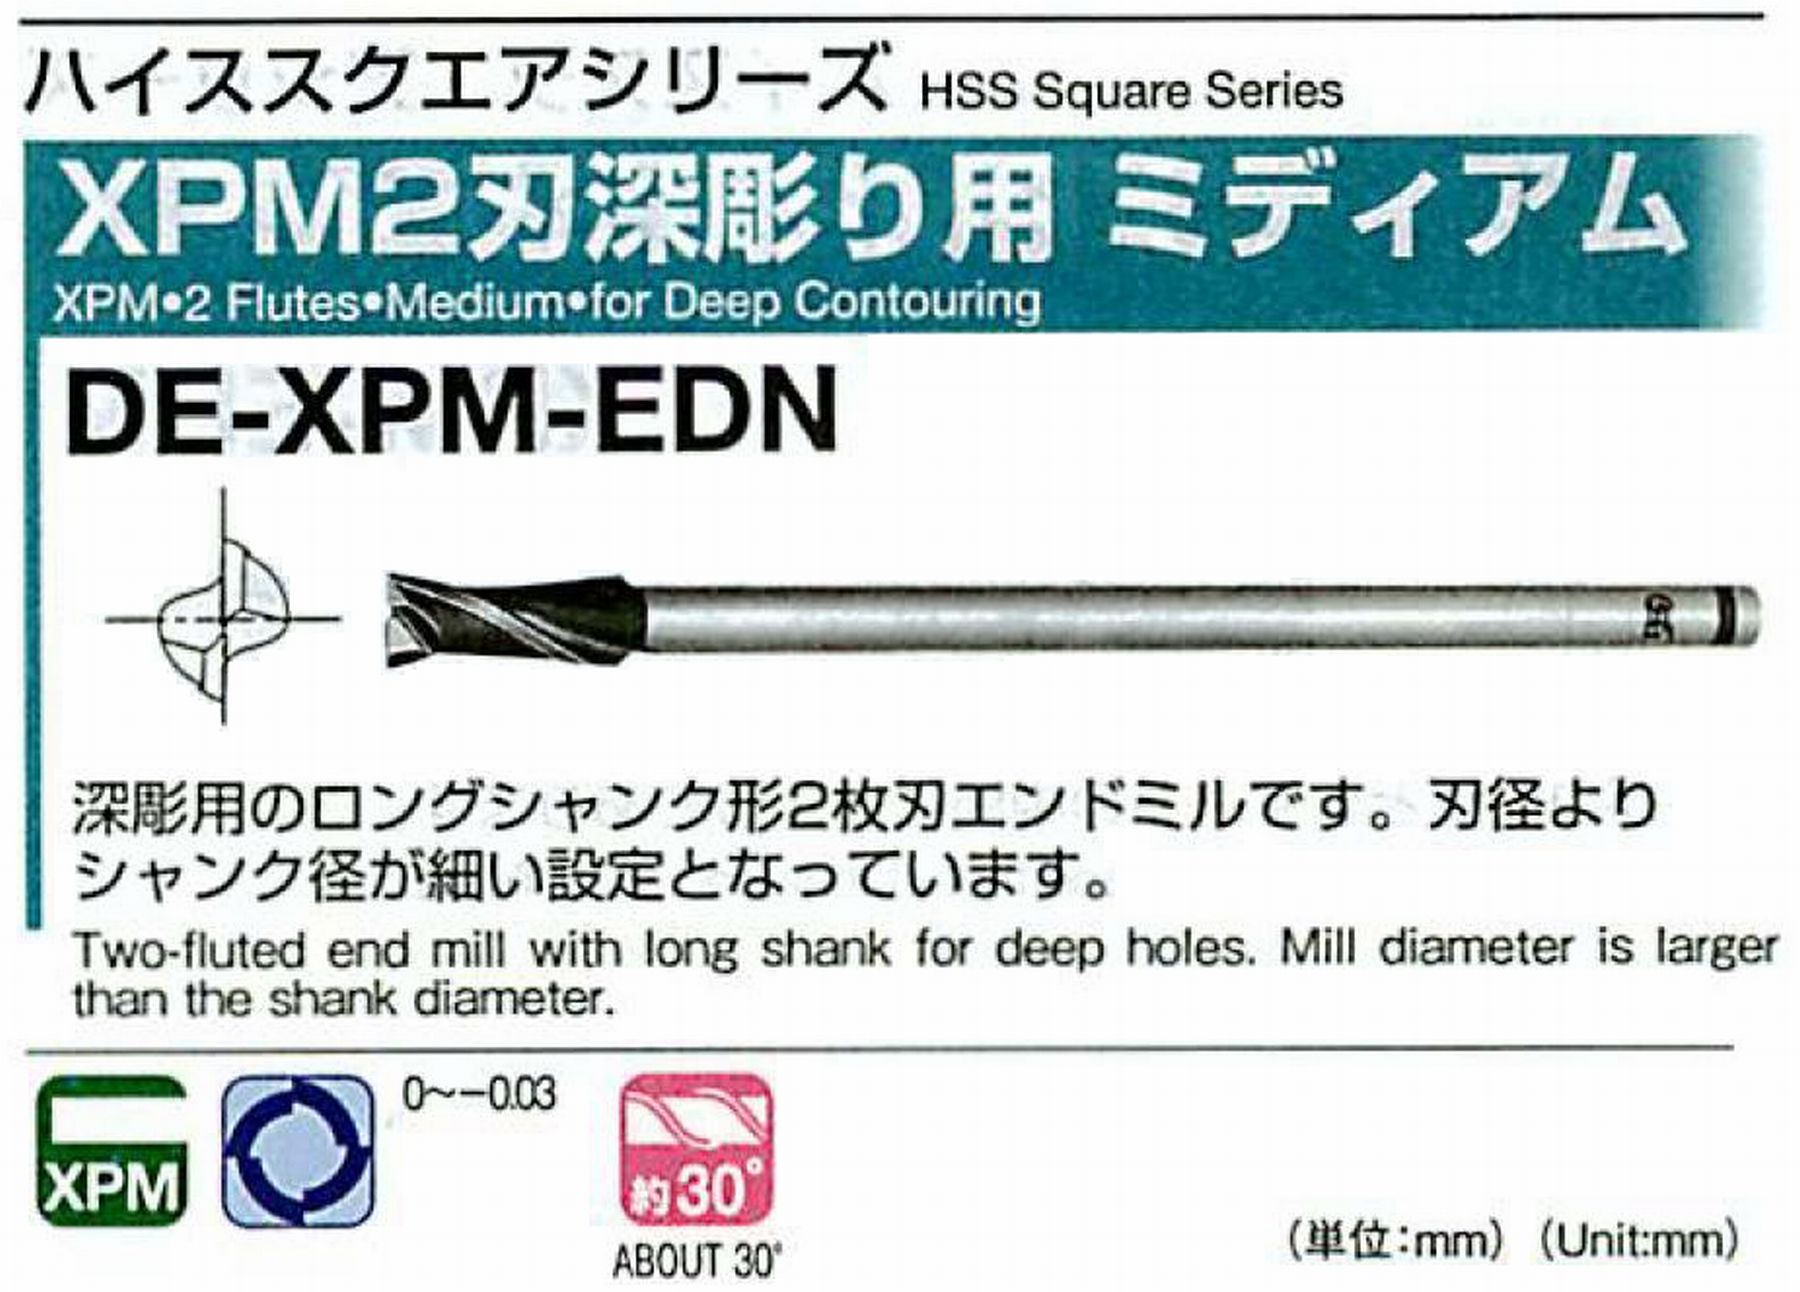 オーエスジー/OSG XPM2刃深彫り用 ミディアム DE-XPM-EDN 外径42 全長350 刃長70 シャンク径32mm